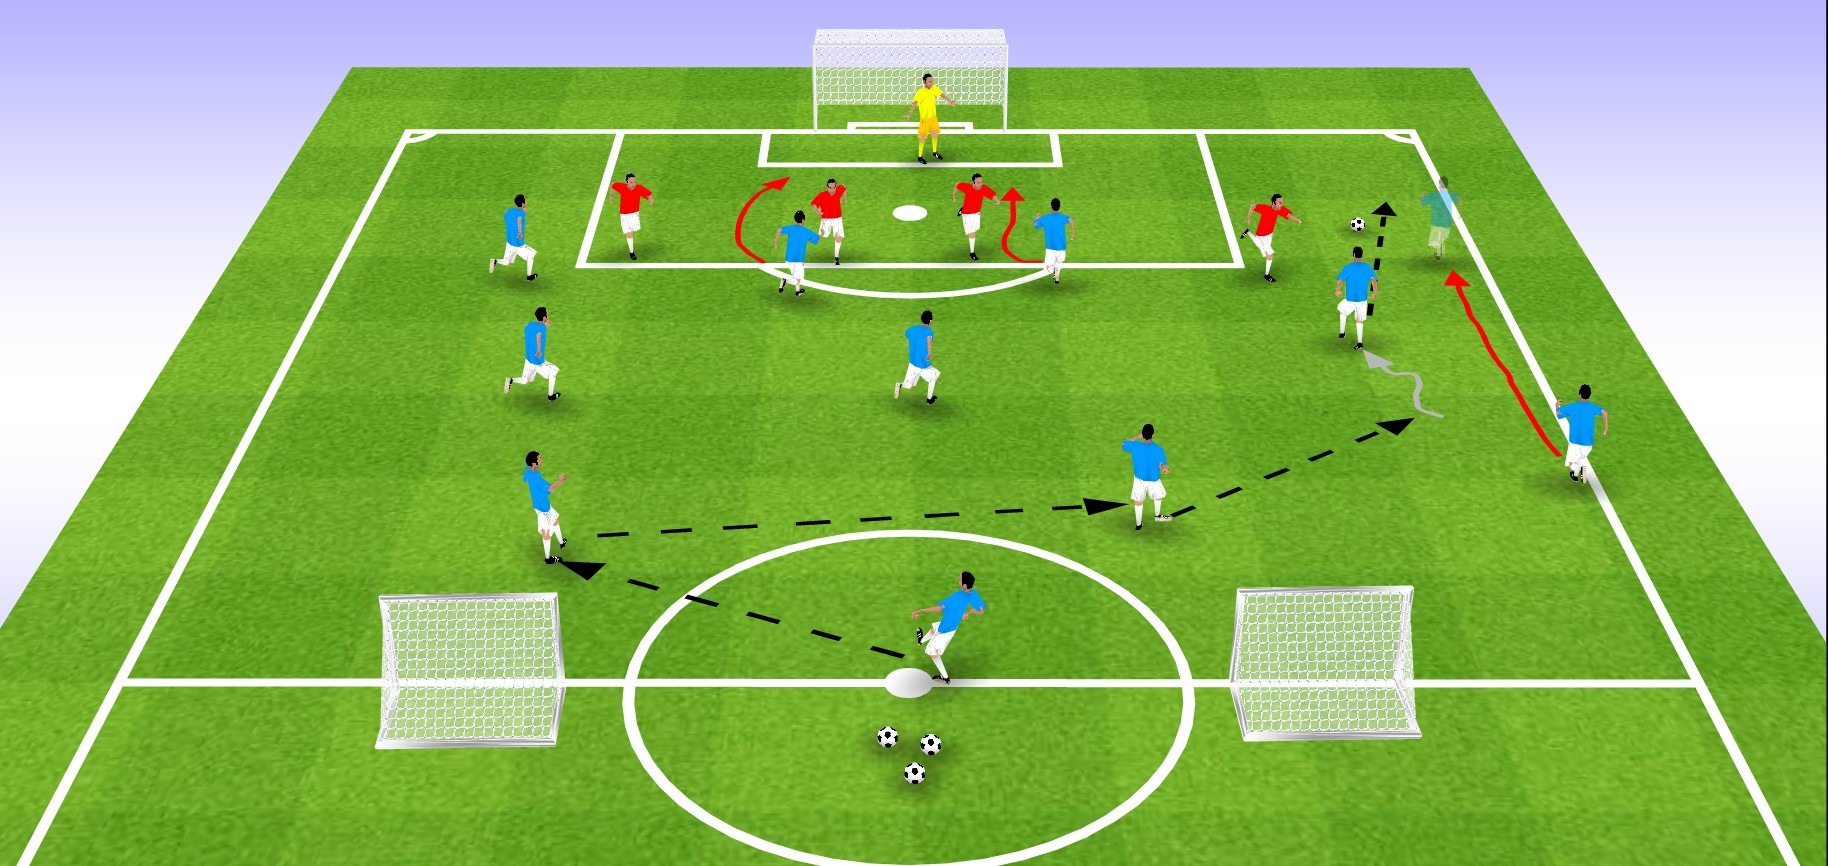 足球教案 | 意大利足球青训:带球变向+射门练习